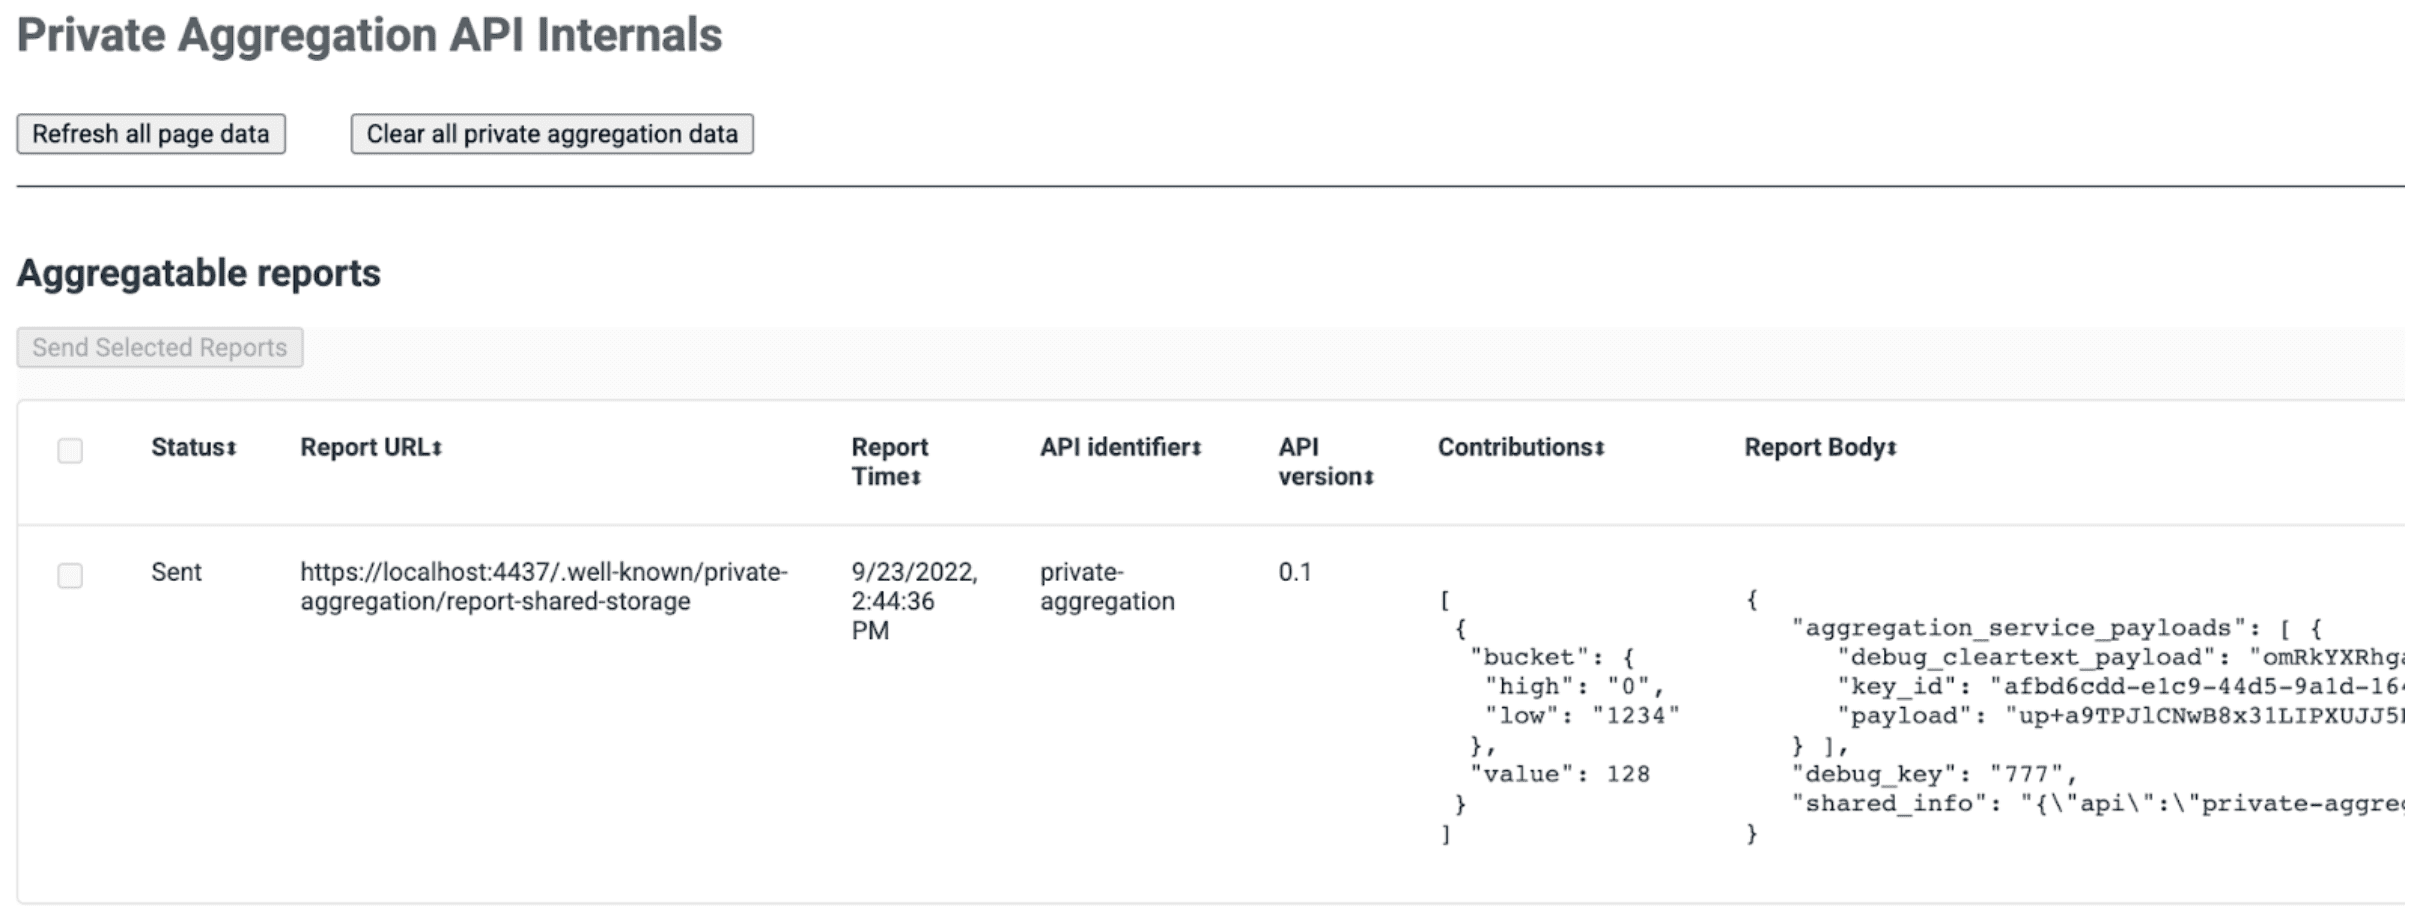 צילום מסך של דף ה-API הפנימי לצבירה פרטית